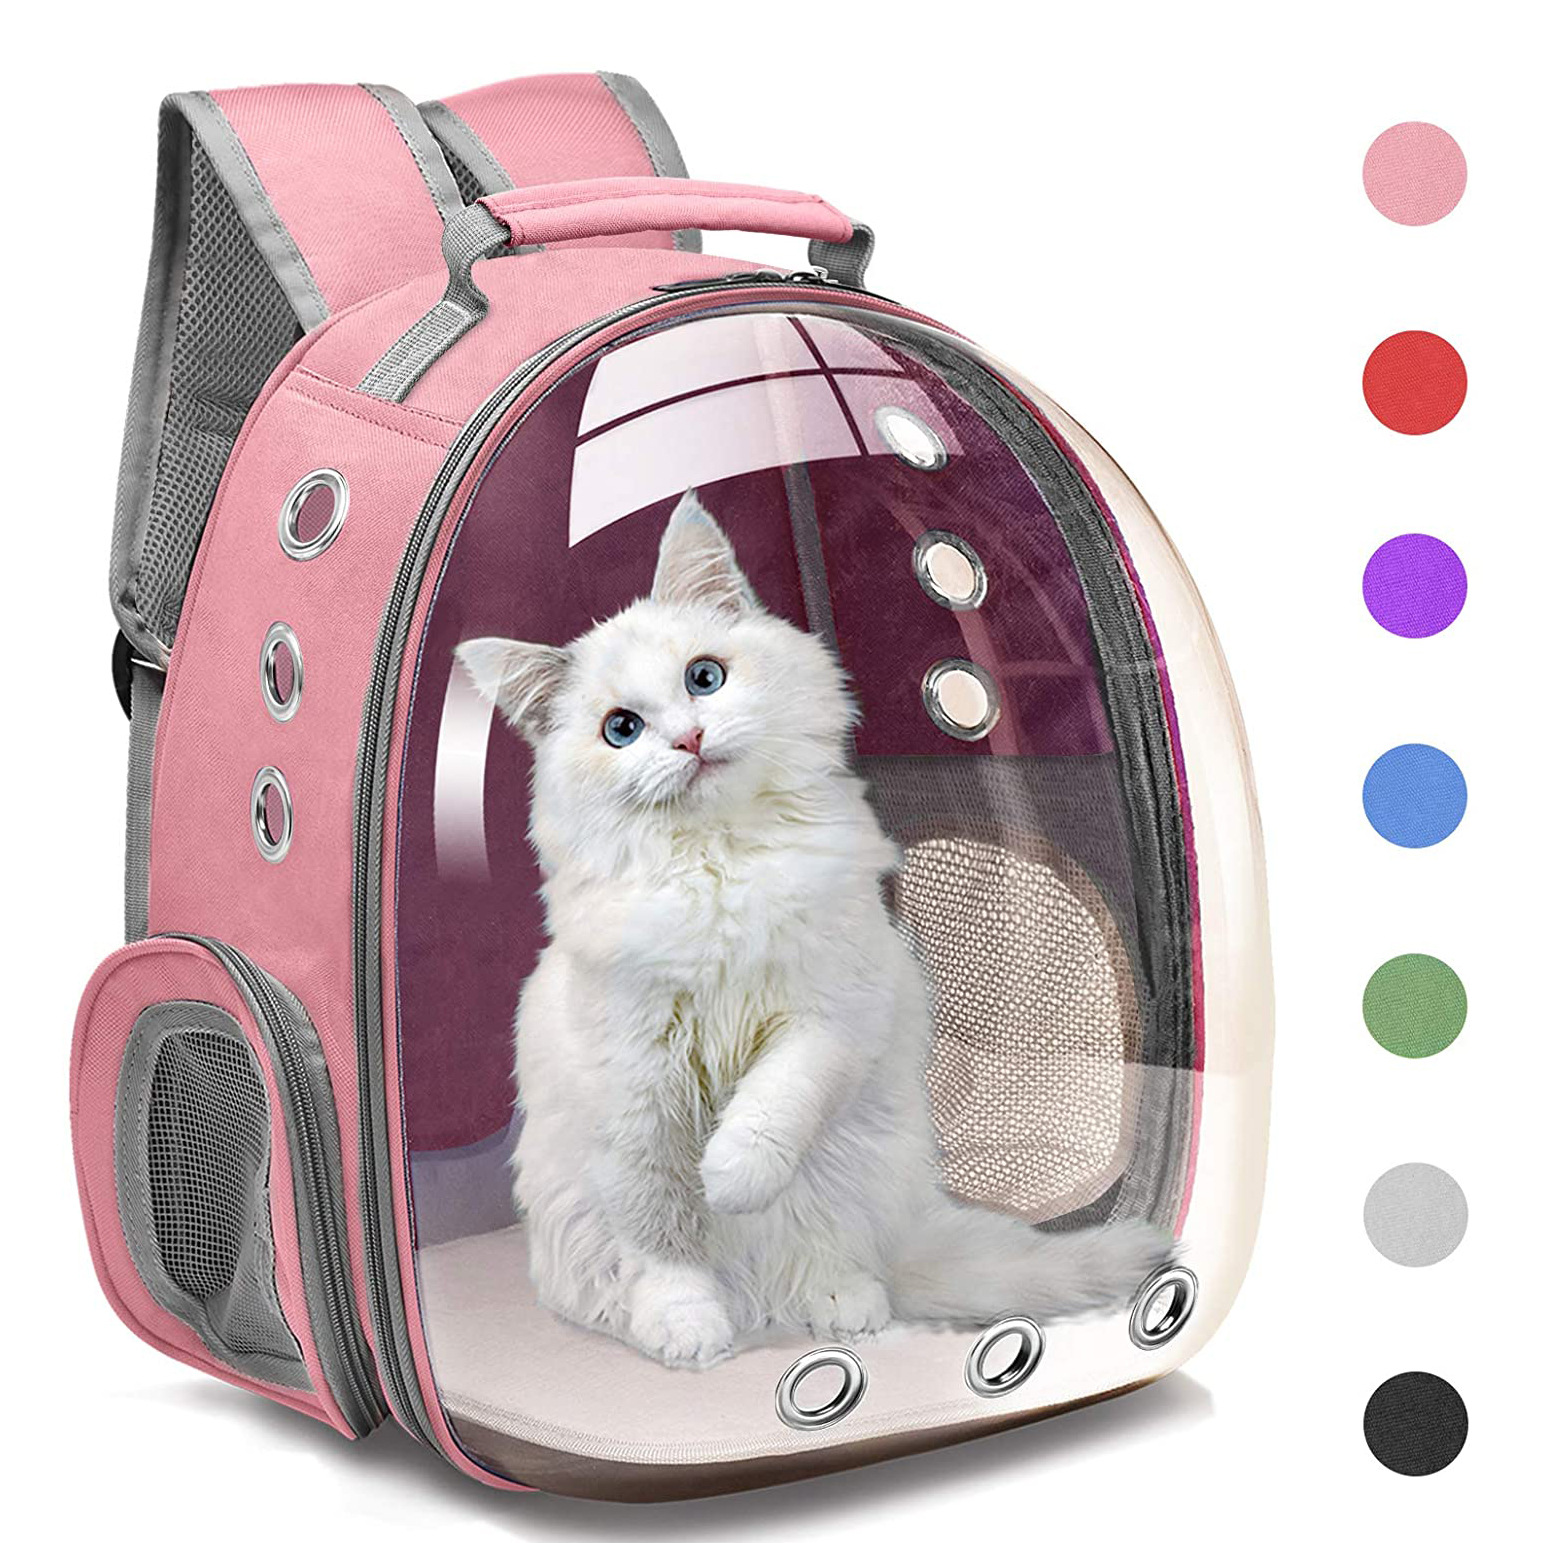 Купить рюкзак переноску для кошек. Рюкзак Pet Carrier. Переноски для котов. Рюкзак для переноски кошек. Переноска портфель для котят.